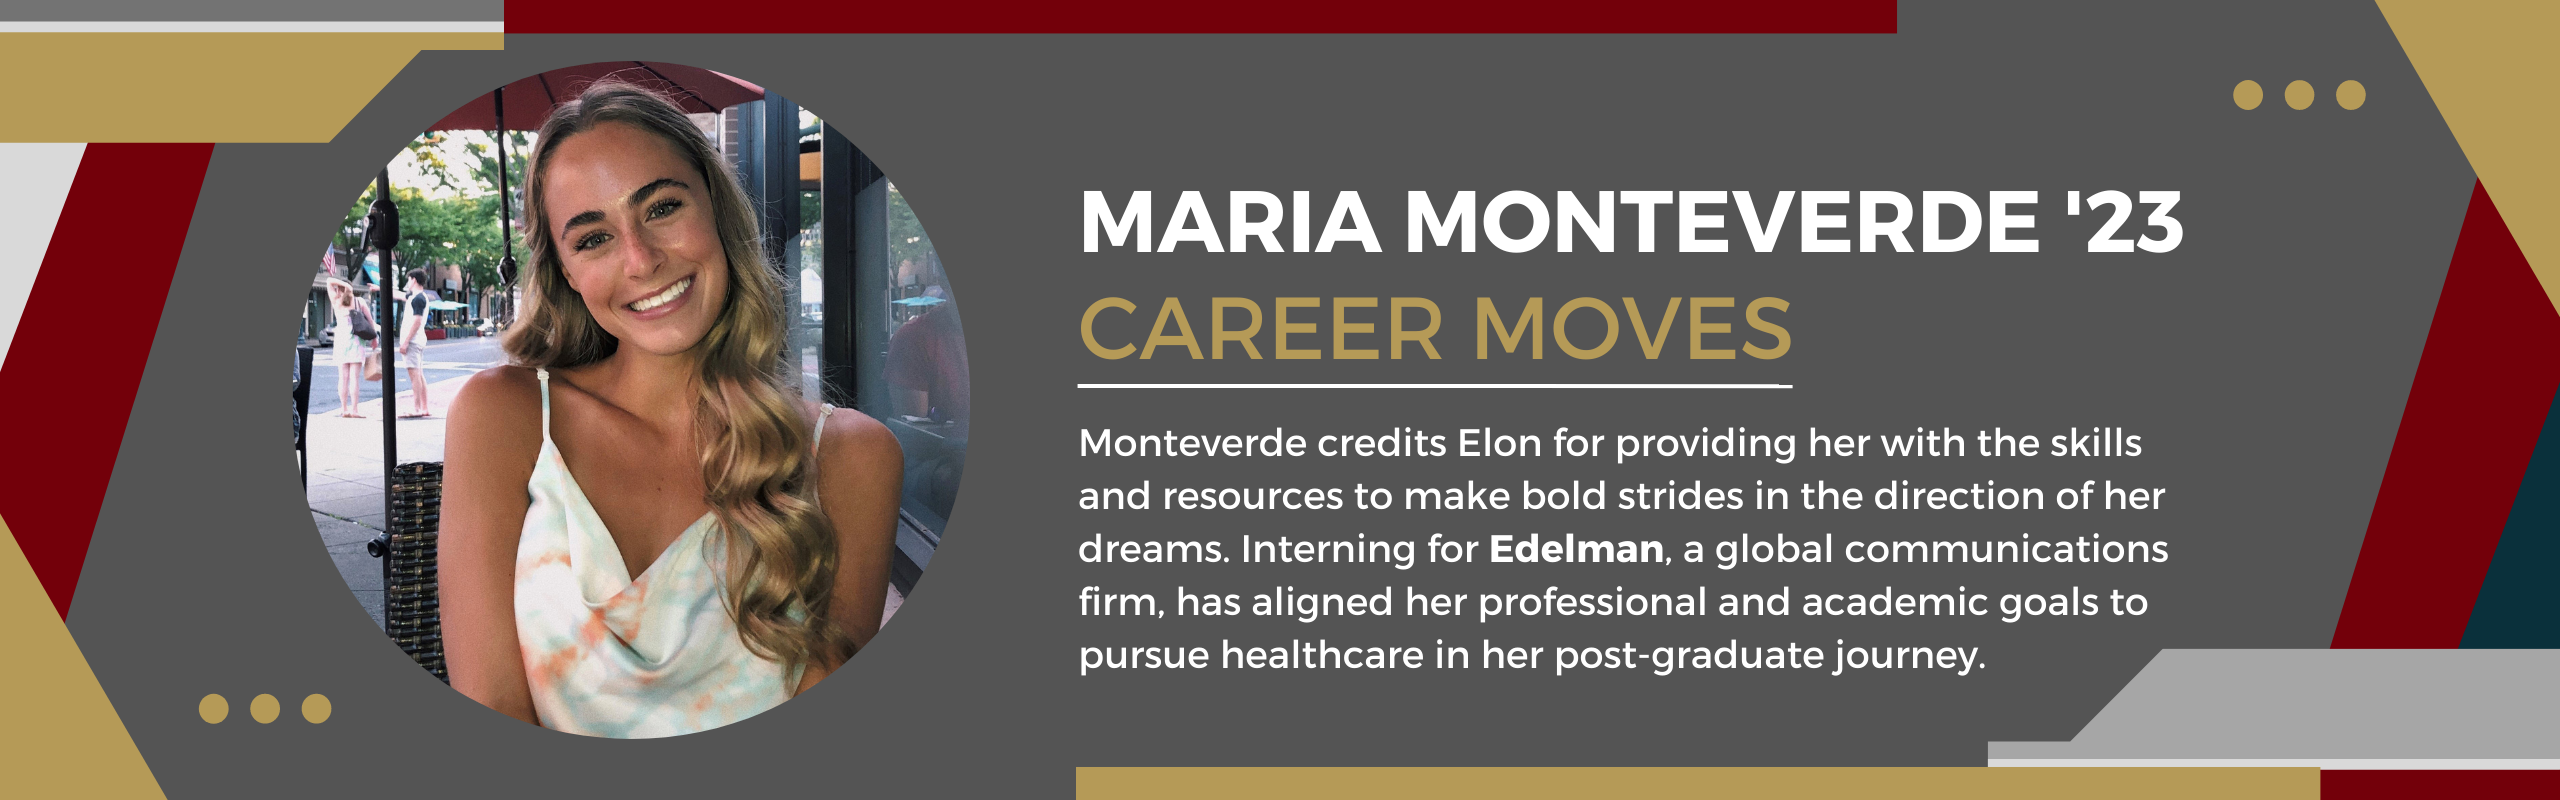 Maria Monteverde Career Moves